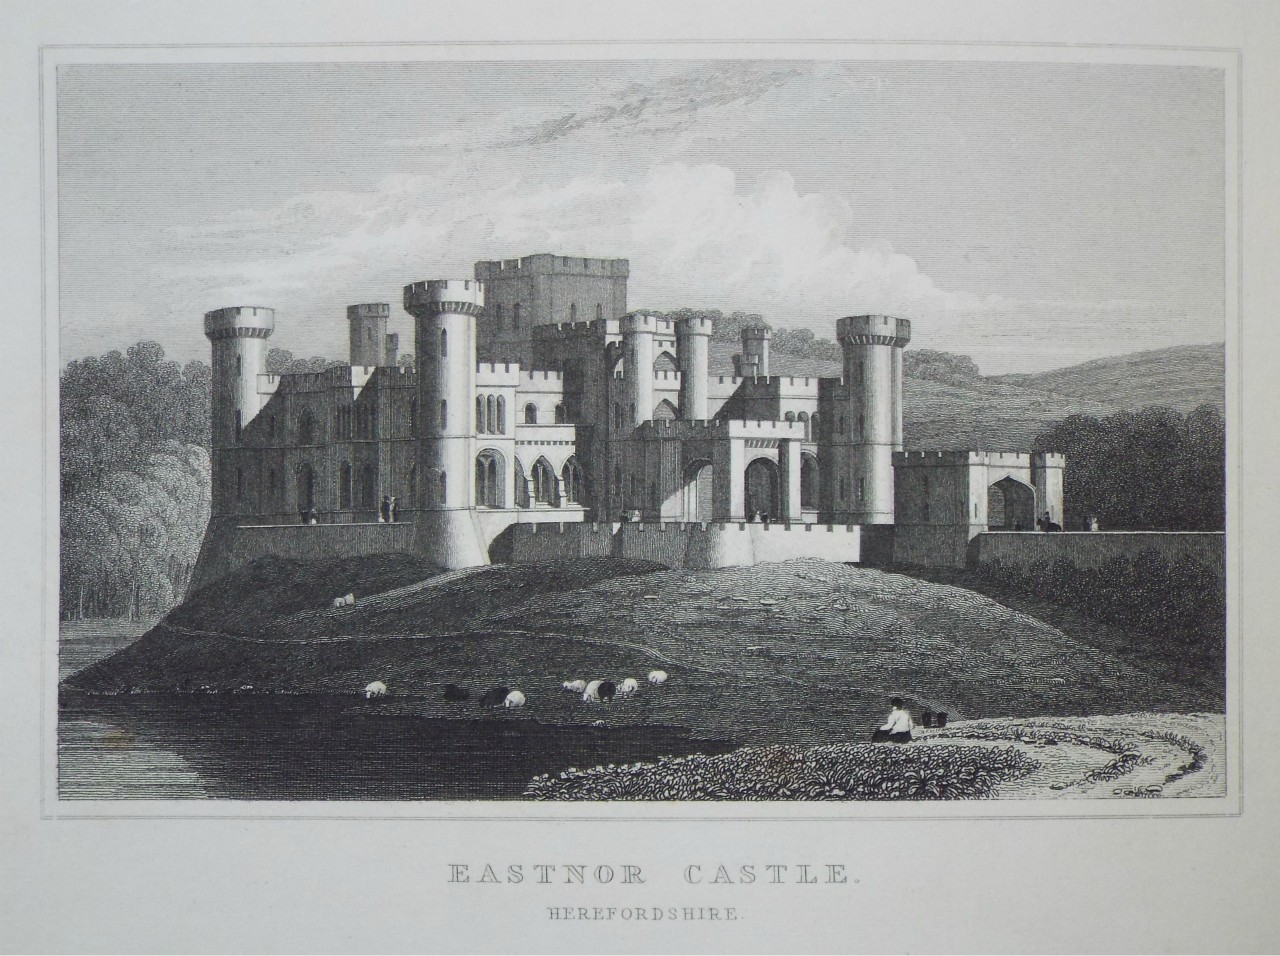 Print - Eastnor Castle. Herefordshire. - Bond